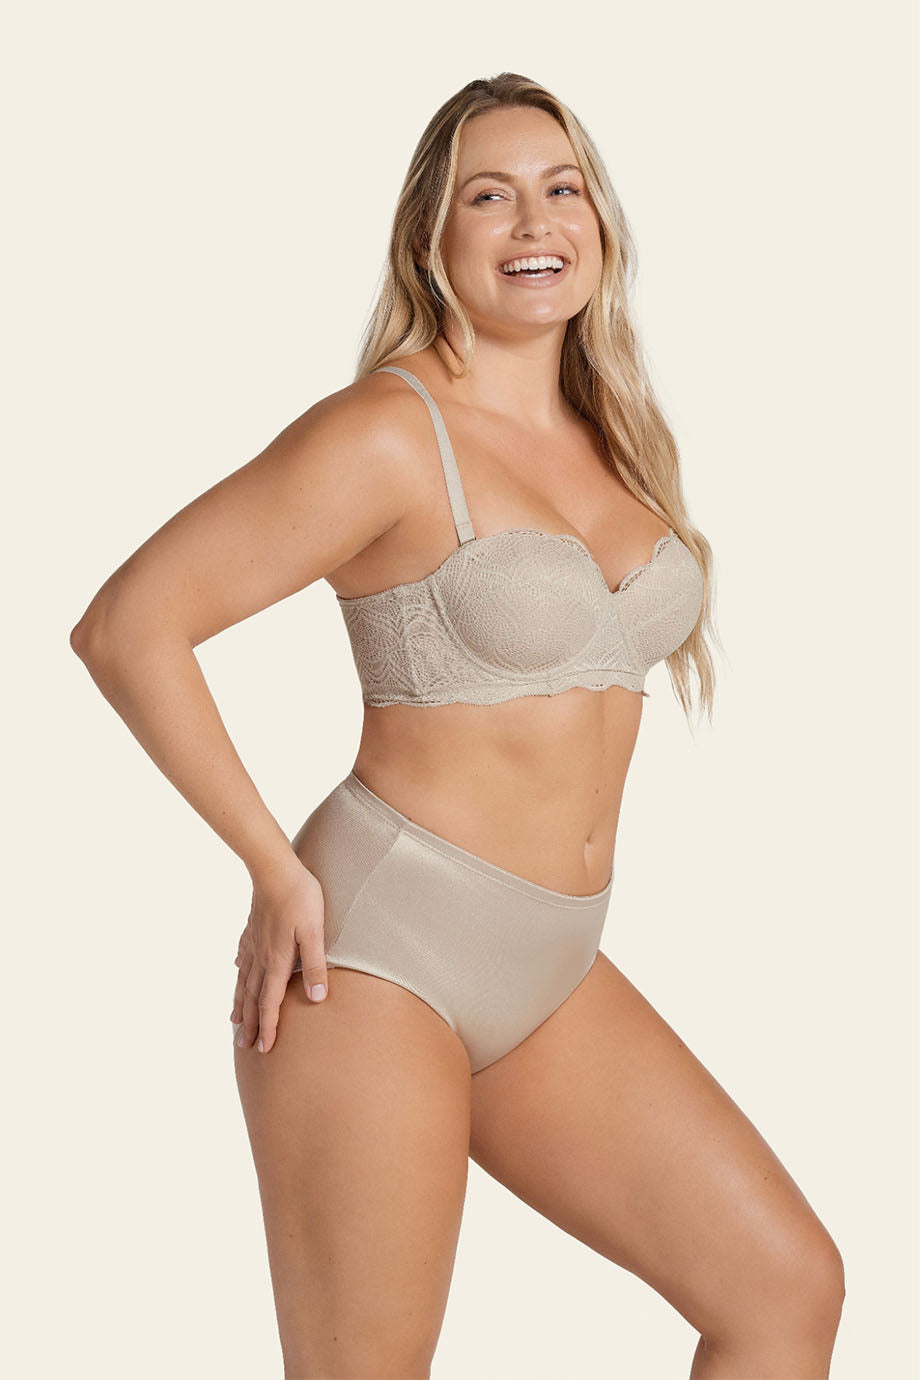 ORQ Women Plus Size Sexy Lace Underwear Bra Two-pieces Lingerie Set